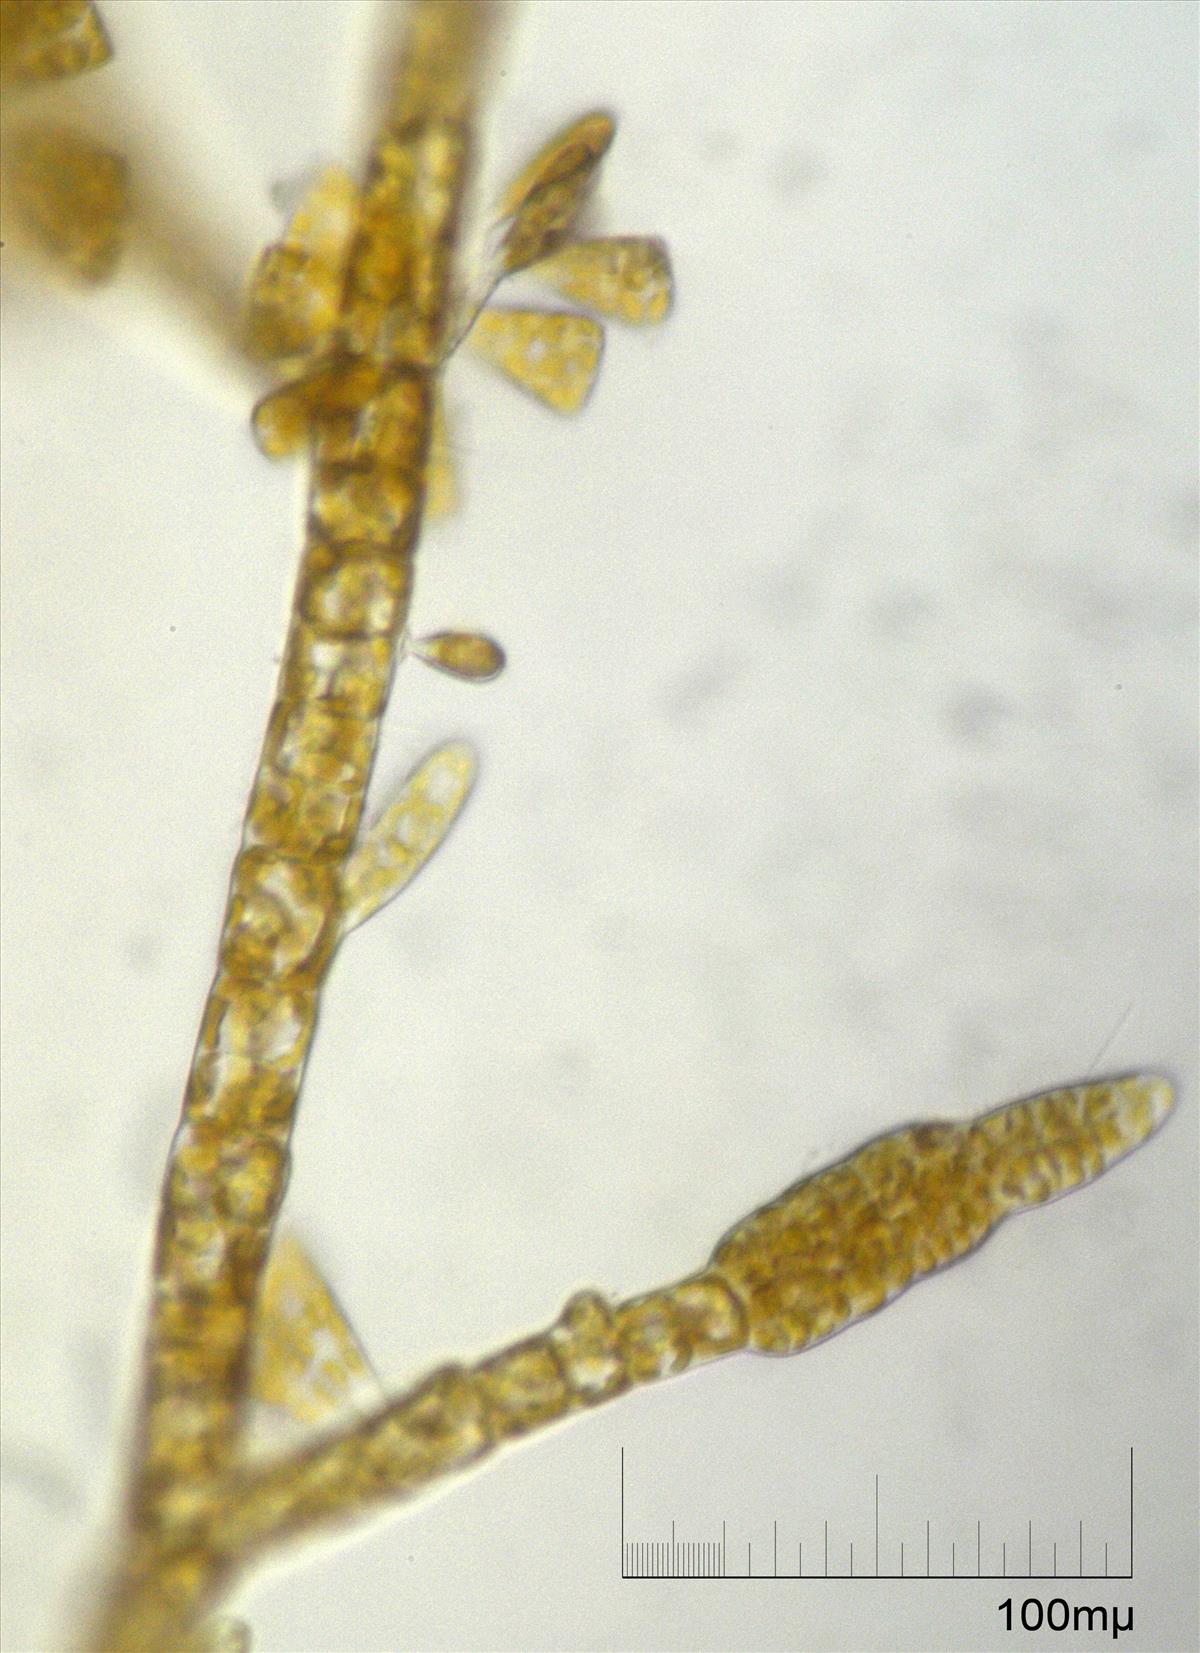 Ectocarpus siliculosus (door Mart Karremans)